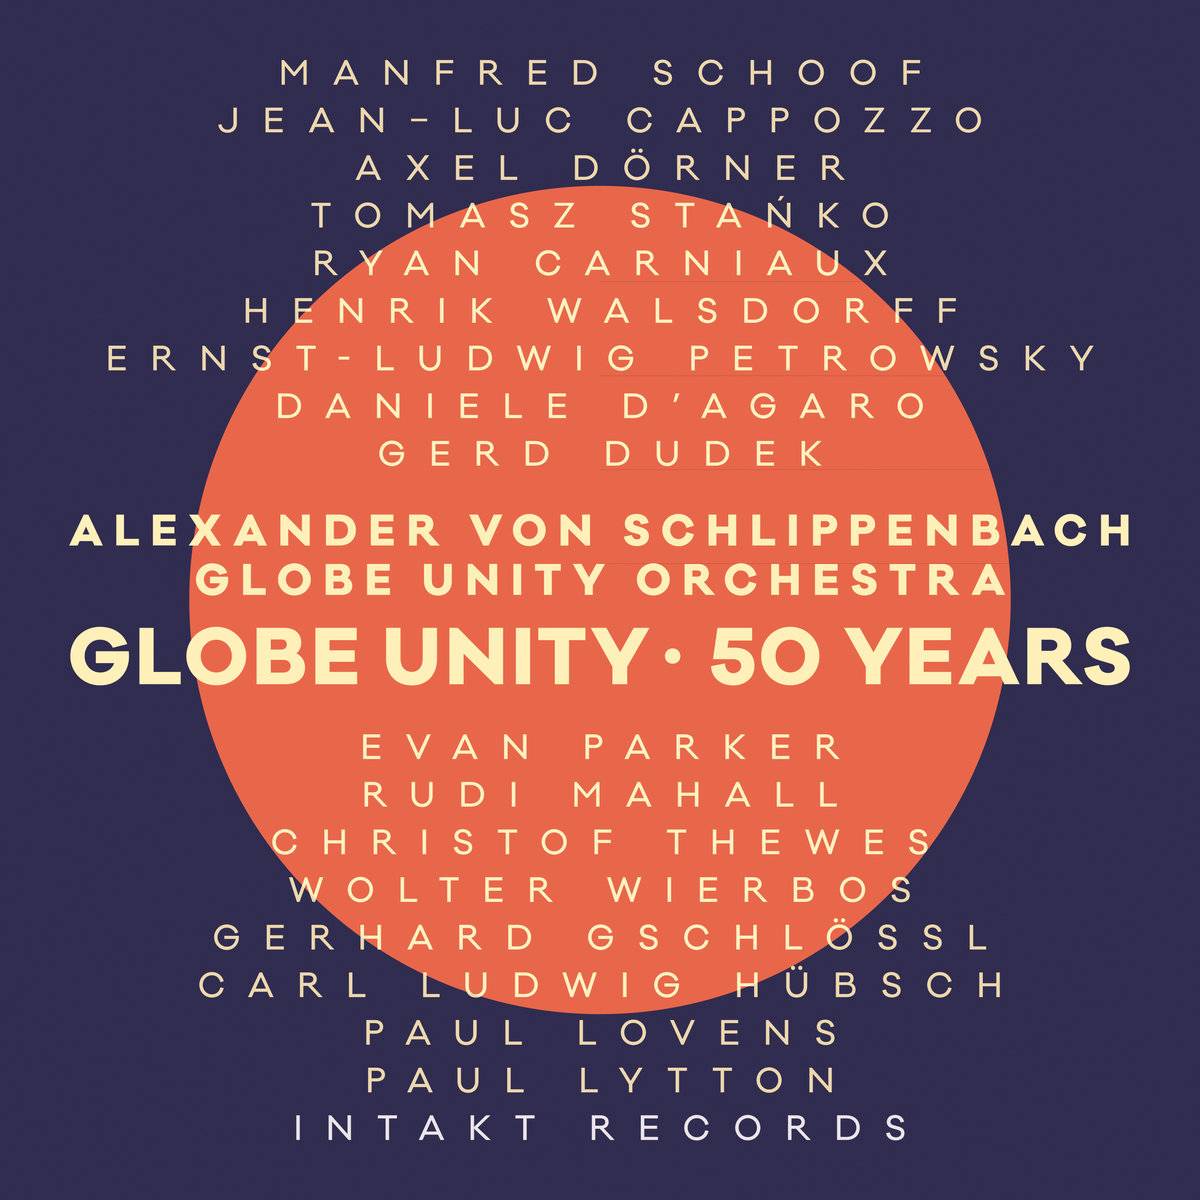 Alexander von Schlippenbach Globe Unity Orchestra – Global Unity: 50 Years (2018) [HDTracks FLAC 24bit/48kHz]